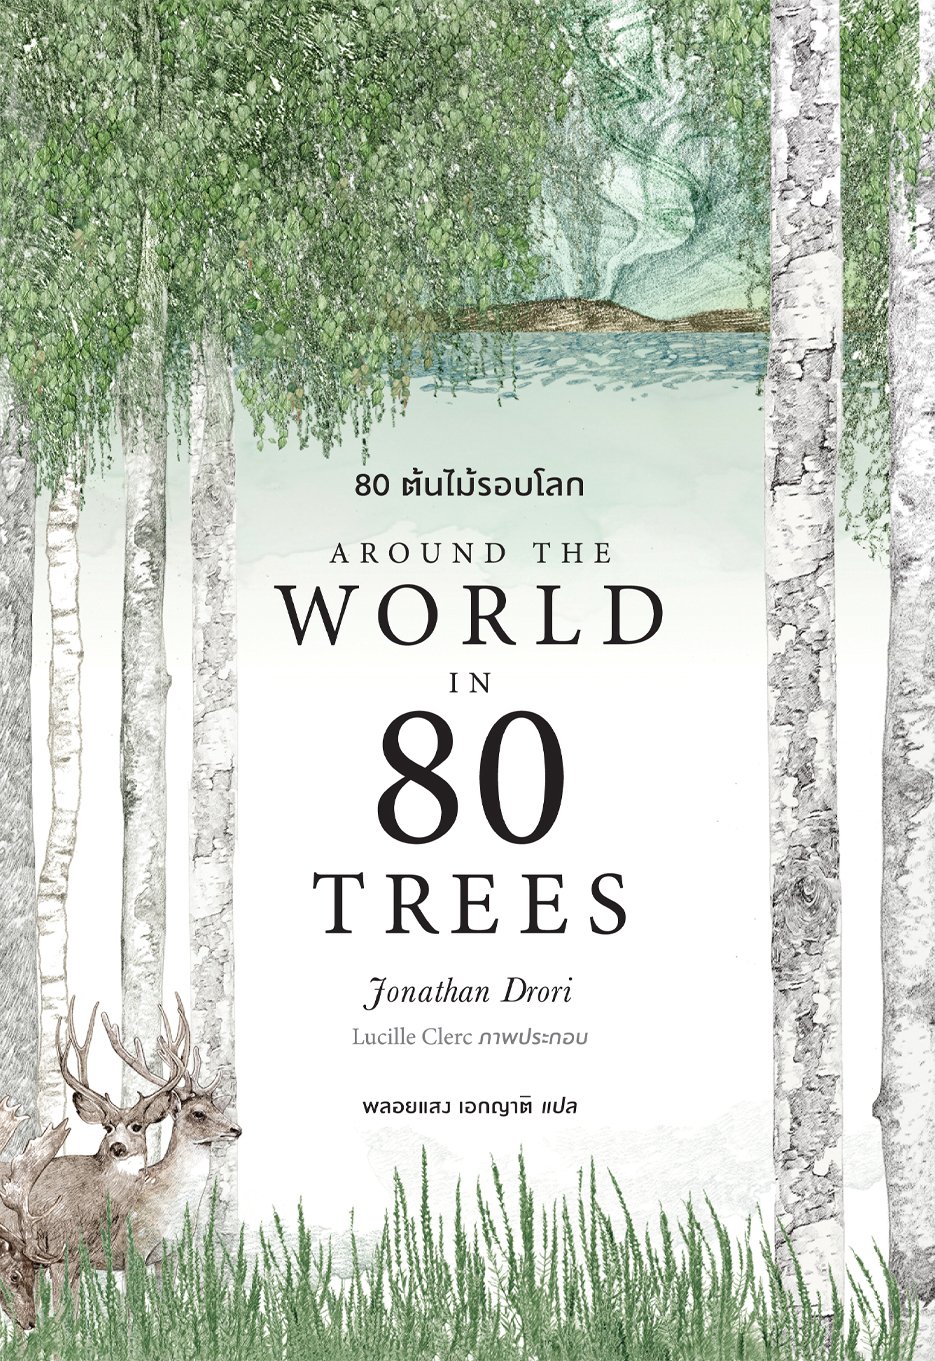 (ปกอ่อน) 80 ต้นไม้รอบโลก  Around the World in 80 Trees / Jonathan Drori เขียน / Lucille Clerc วาด / Bookscape